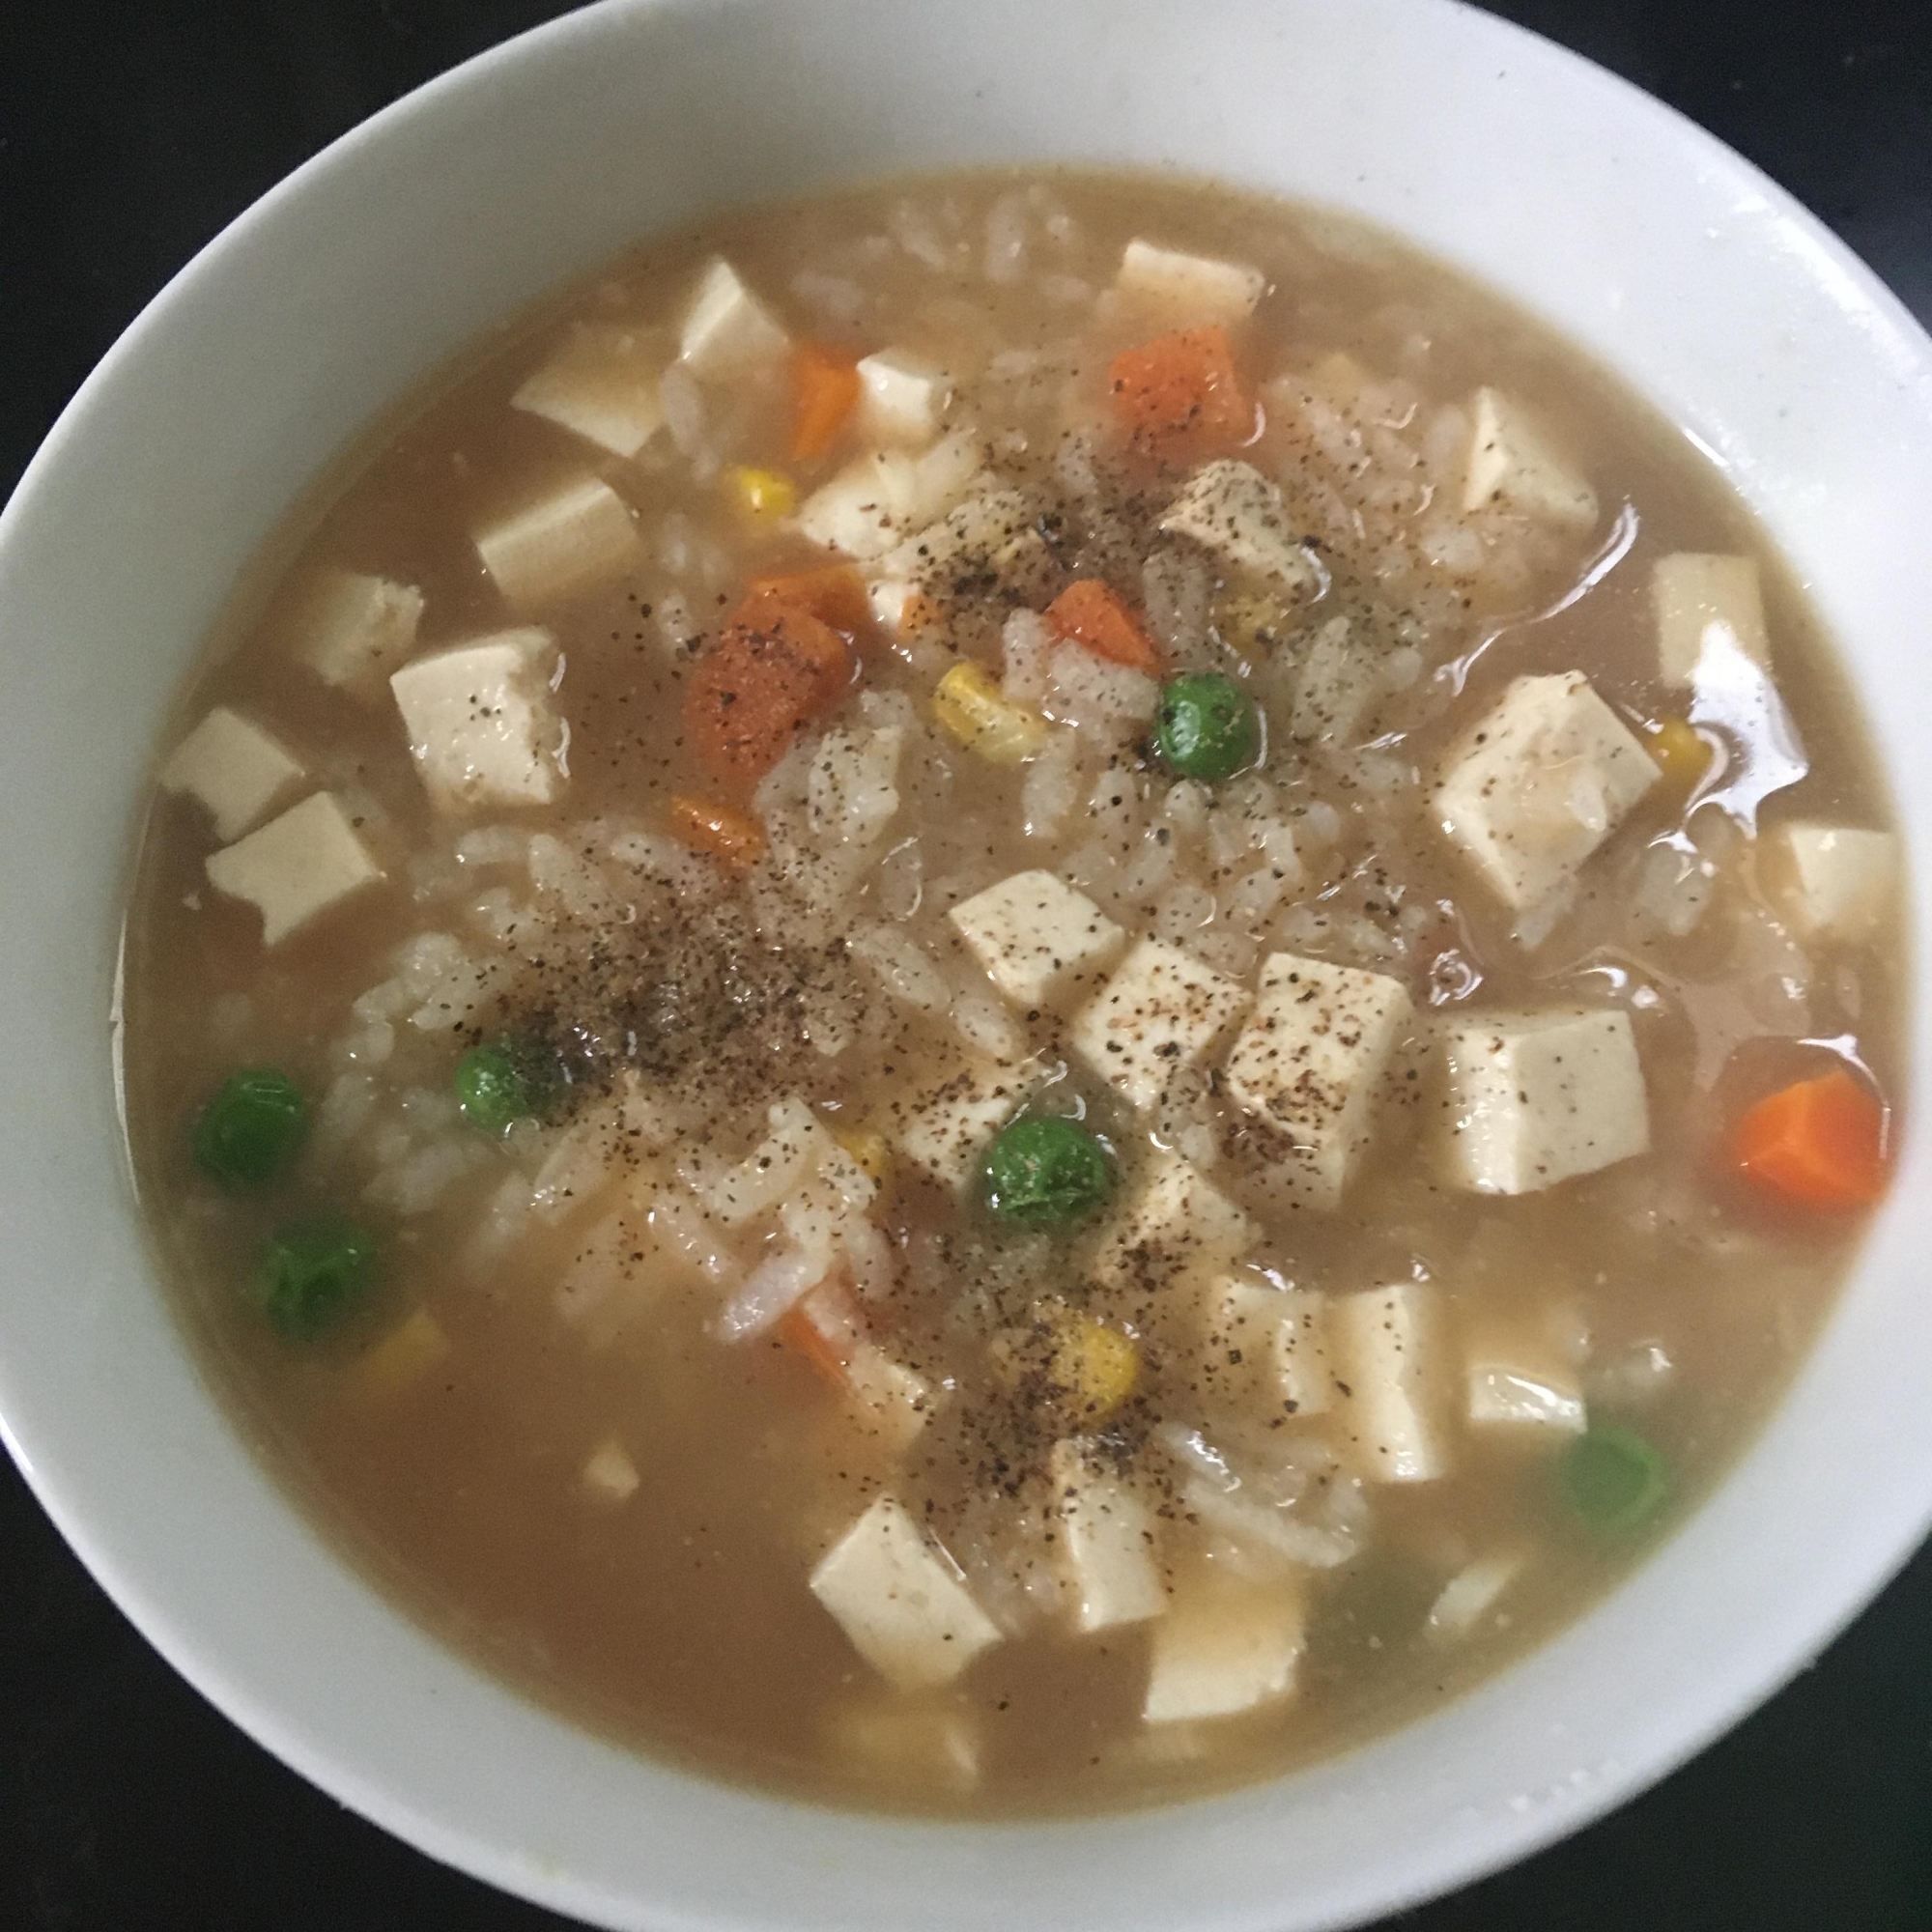 豆腐、にんにく、ミックスベジタブルの雑炊